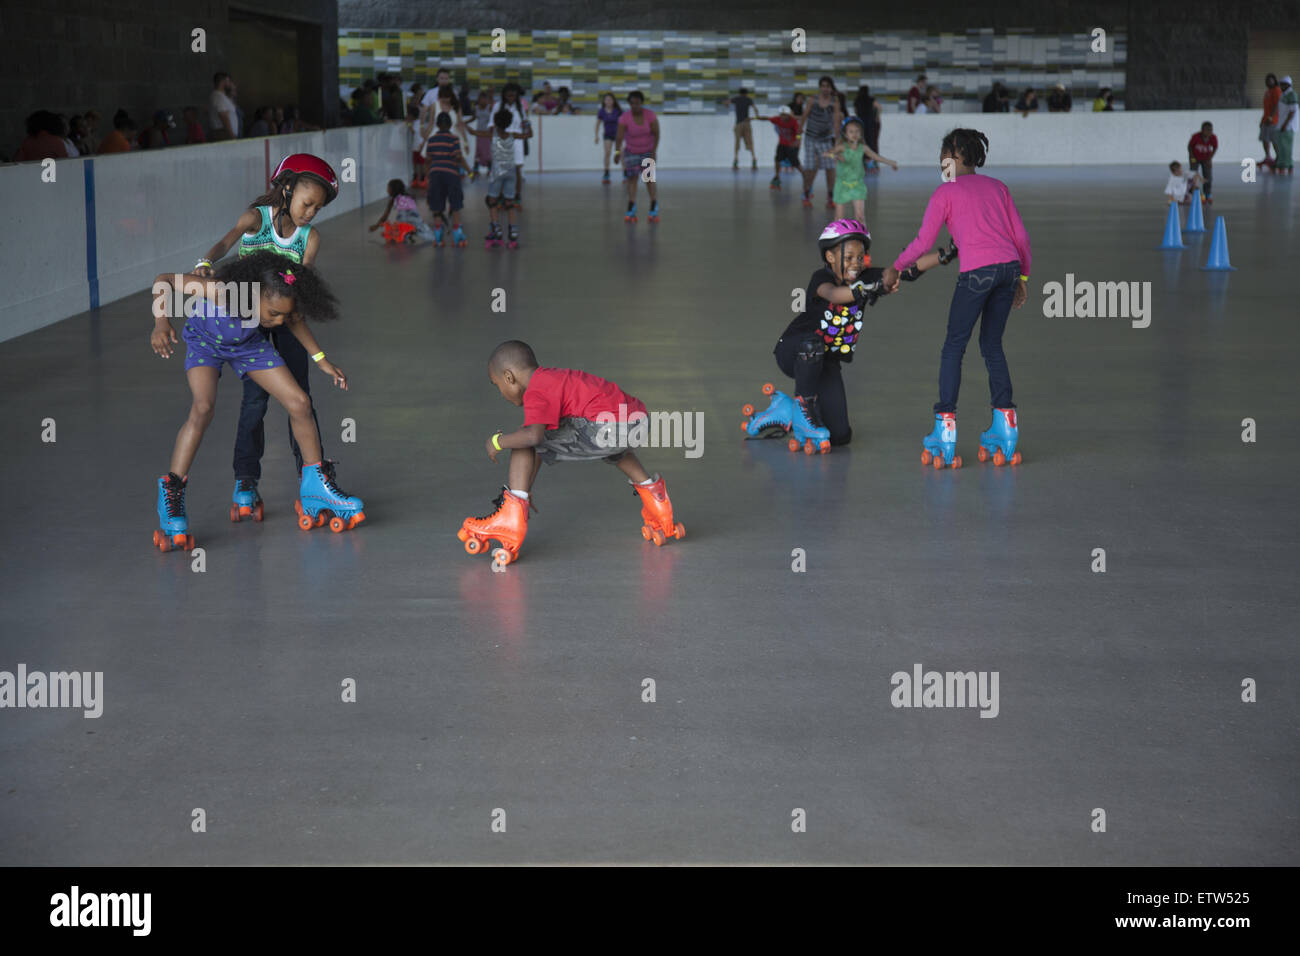 Pista de patinaje sobre ruedas fotografías e imágenes de alta resolución -  Alamy